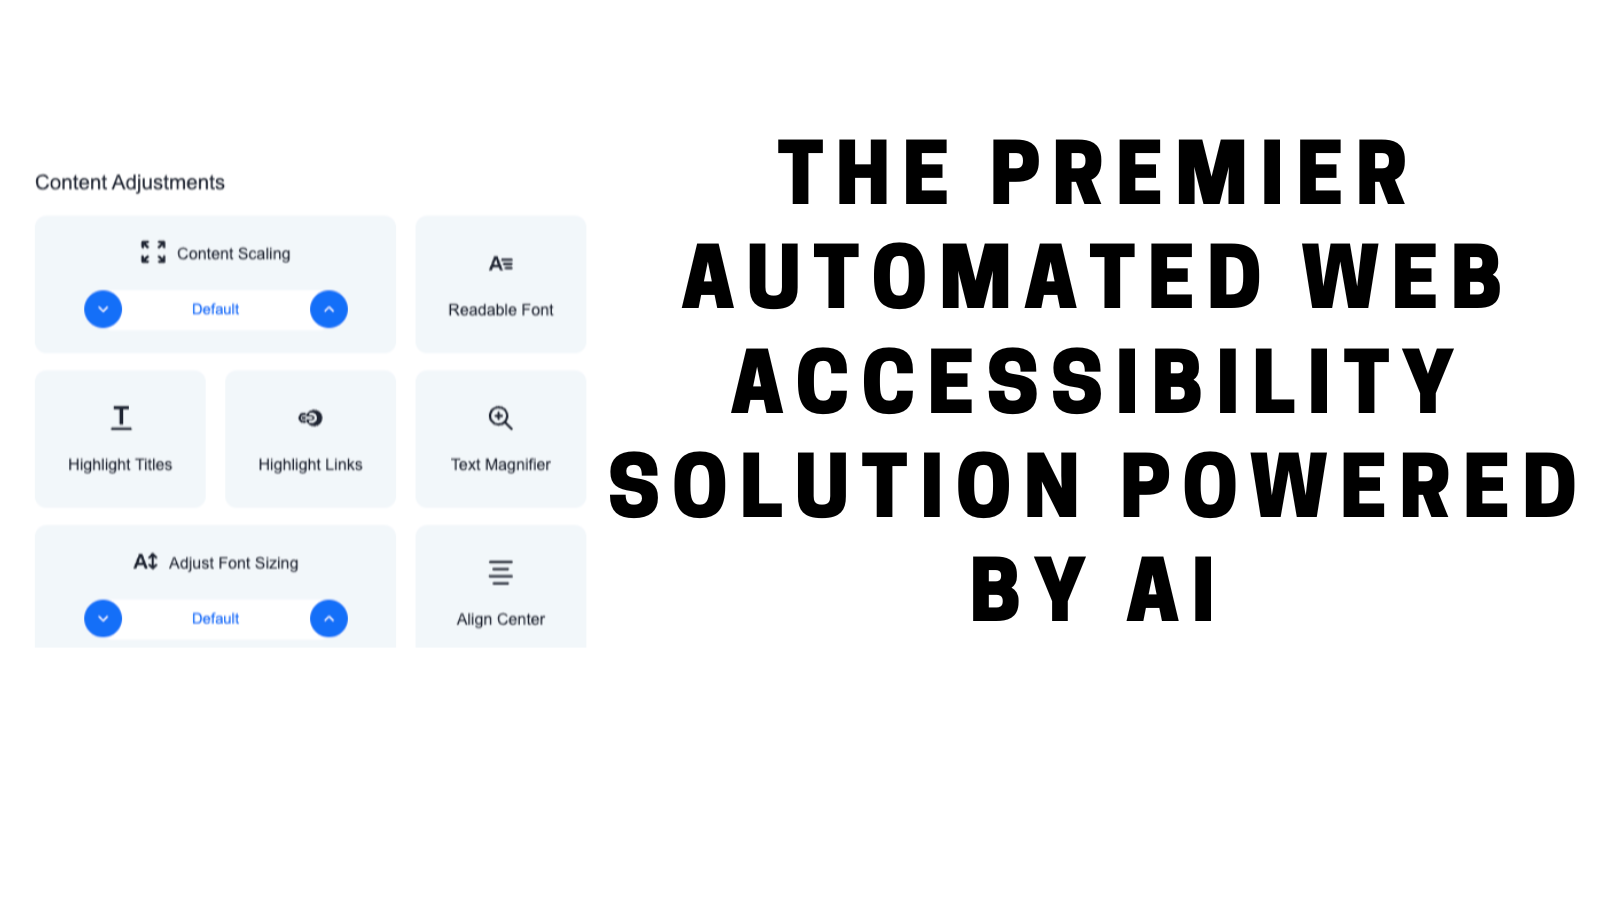 De Premier Geautomatiseerde Web Toegankelijkheidsoplossing Aangedreven door AI